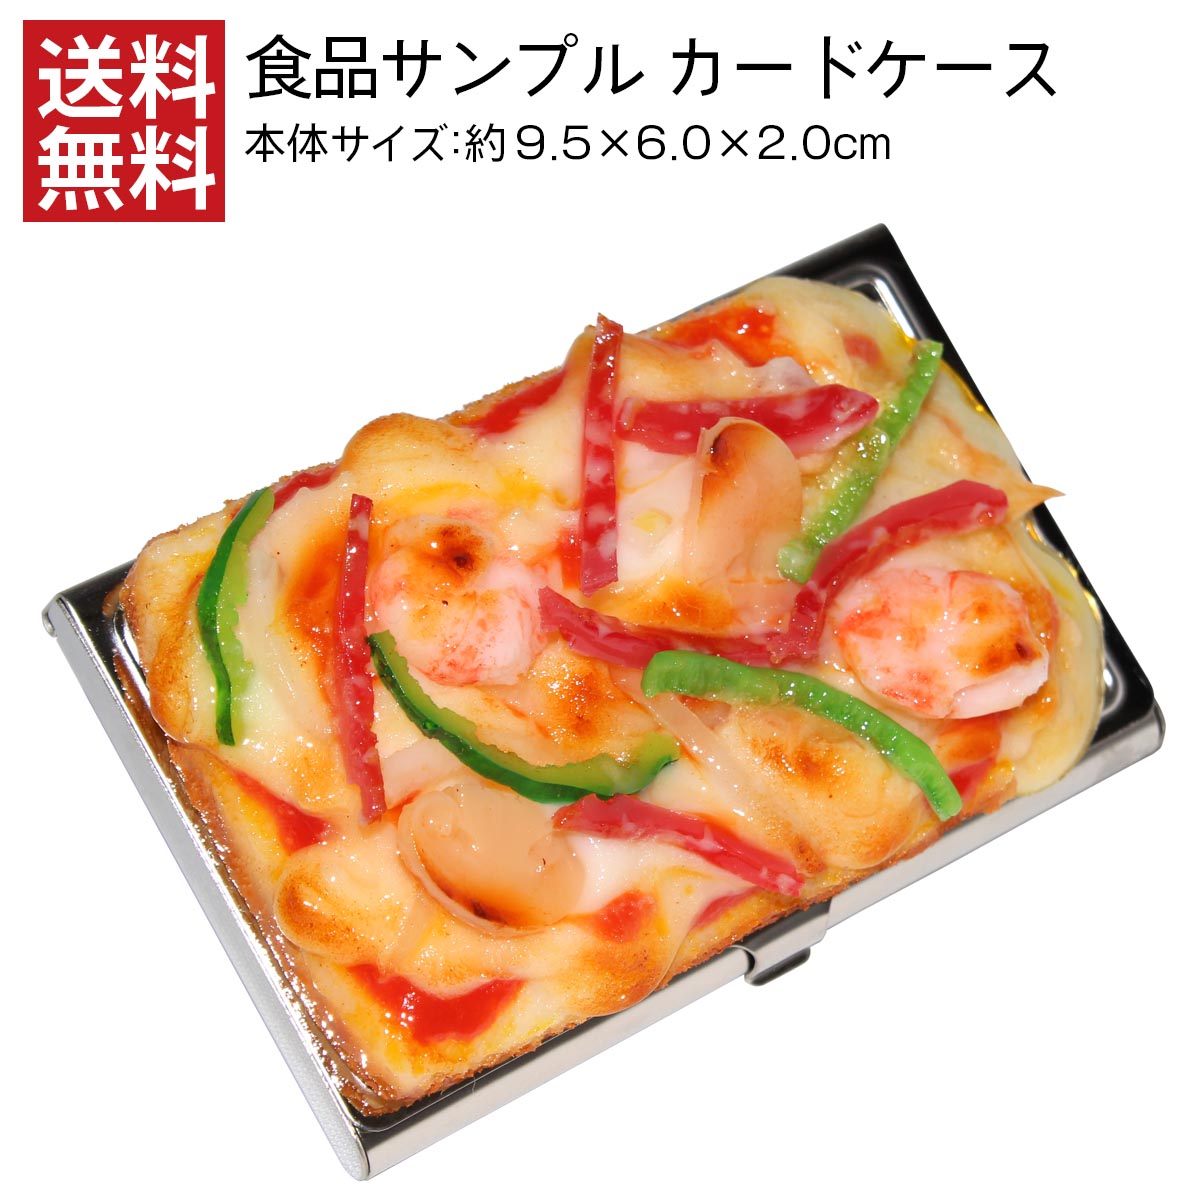 送料無料 食材試料 ボード入れ物 ミックスピザパイ 真実 日本製 数量素質 贋作ボンネット カード入れ 食品雛形 フードサンプル 鬻ぐ 話題造り 名刺入れ おもしろ 雑貨 Yourdesicart Com